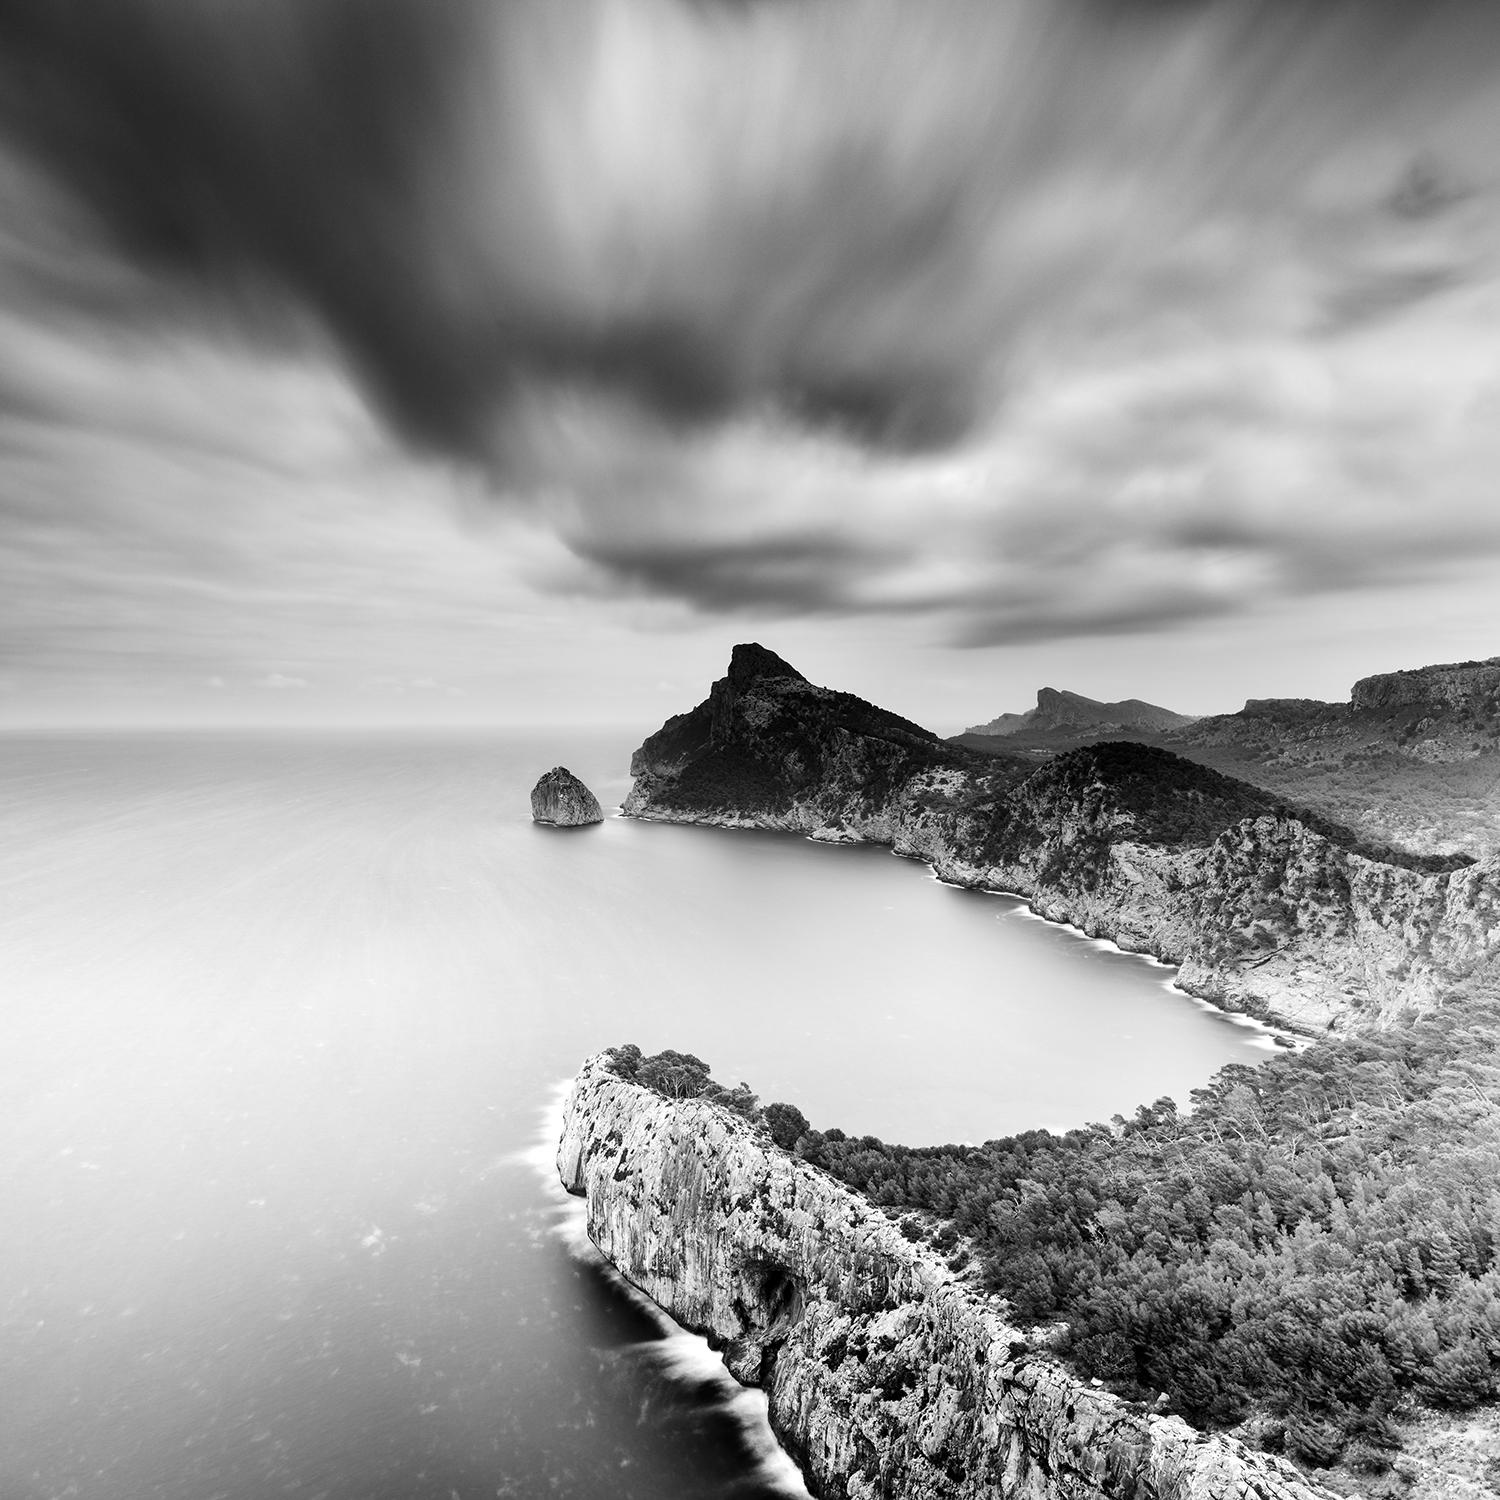 Mirador Es Colomer, Mallorca, Espagne, impression de paysage en noir et blanc, encadrée - Photograph de Gerald Berghammer